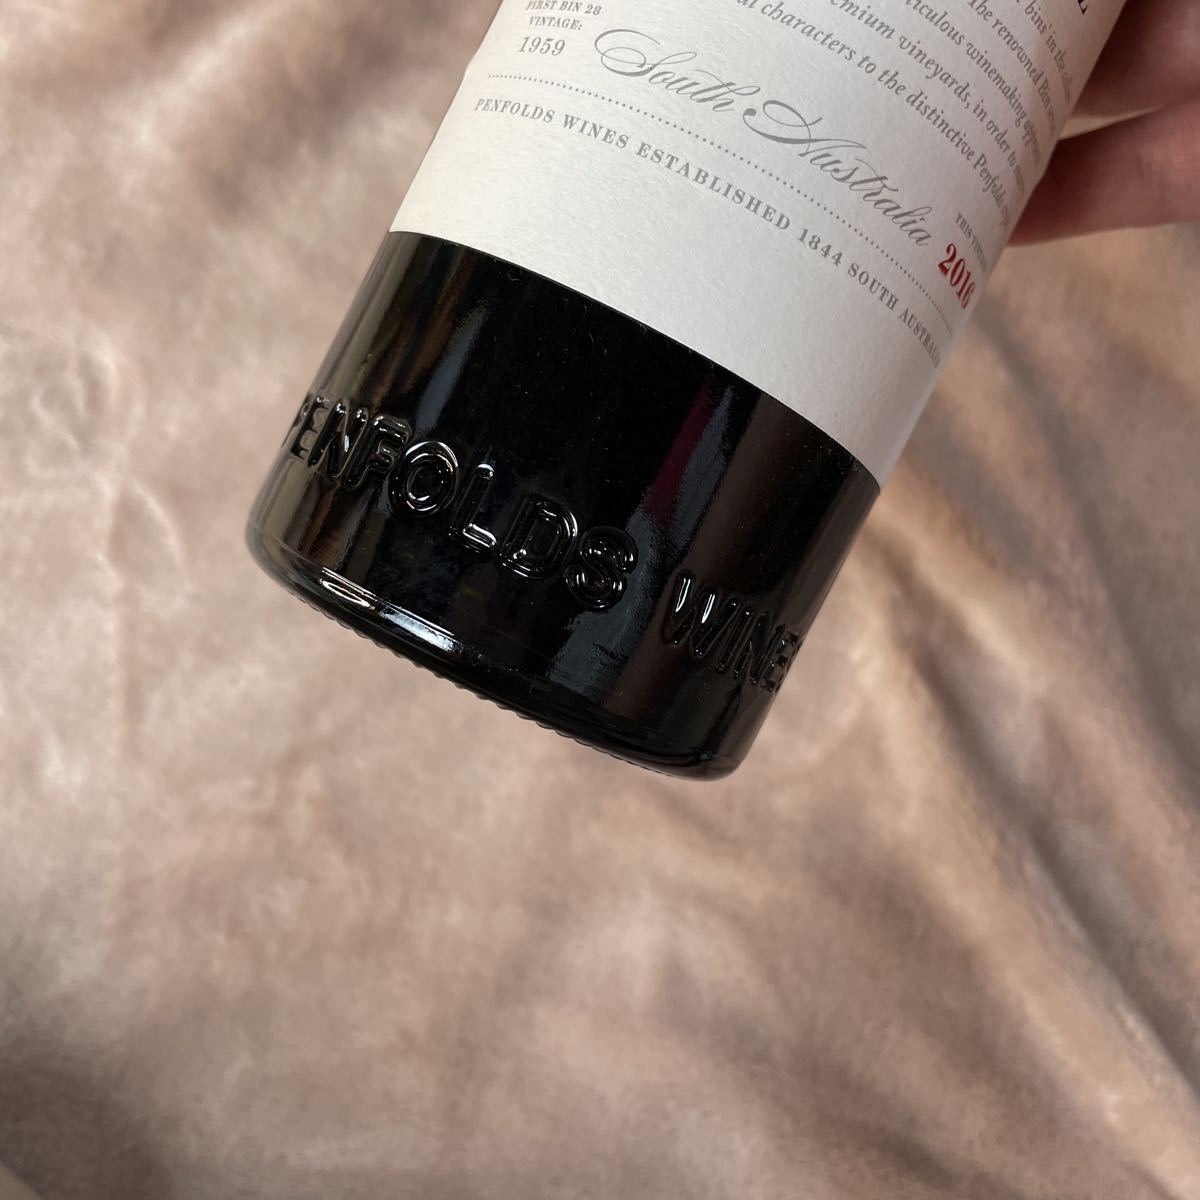 ペンフォールズ カリムナ シラーズ ビン28 KALIMNA SHIRAZ BIN28 2016年 750ml 赤ワイン オーストラリア C 